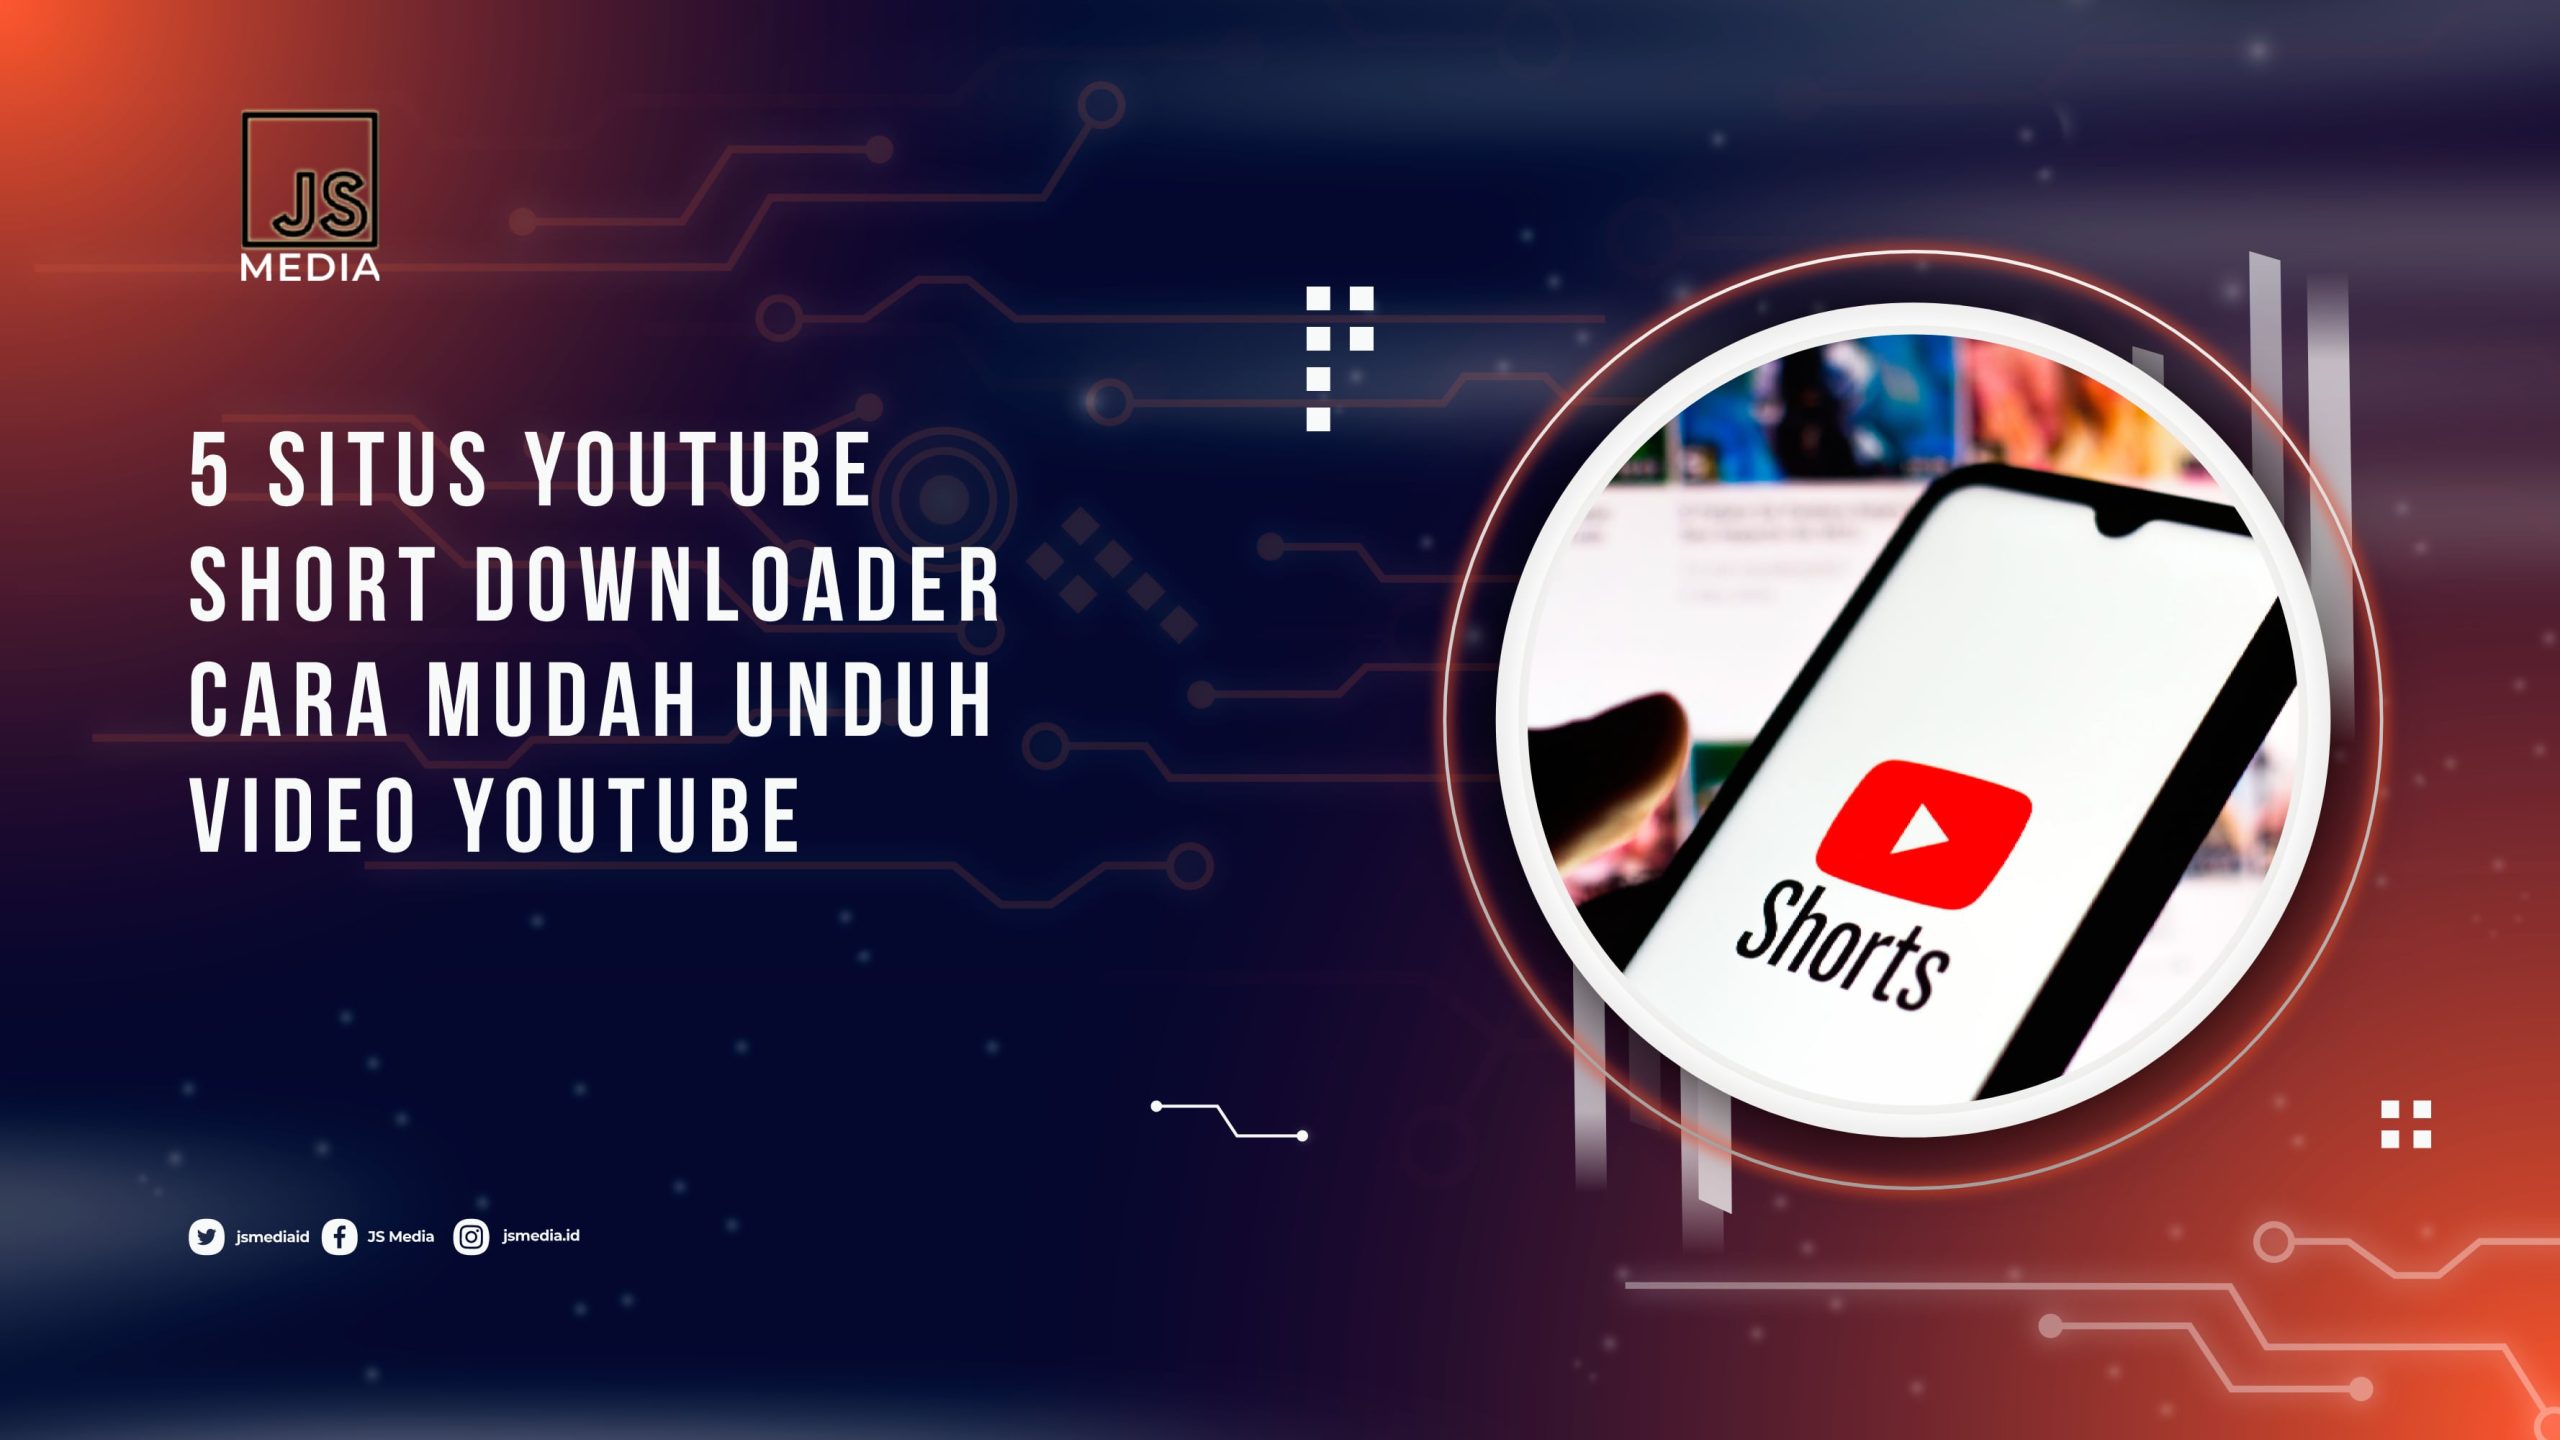 Situs YouTube Shorts Downloader, Cara Mudah Unduh Video